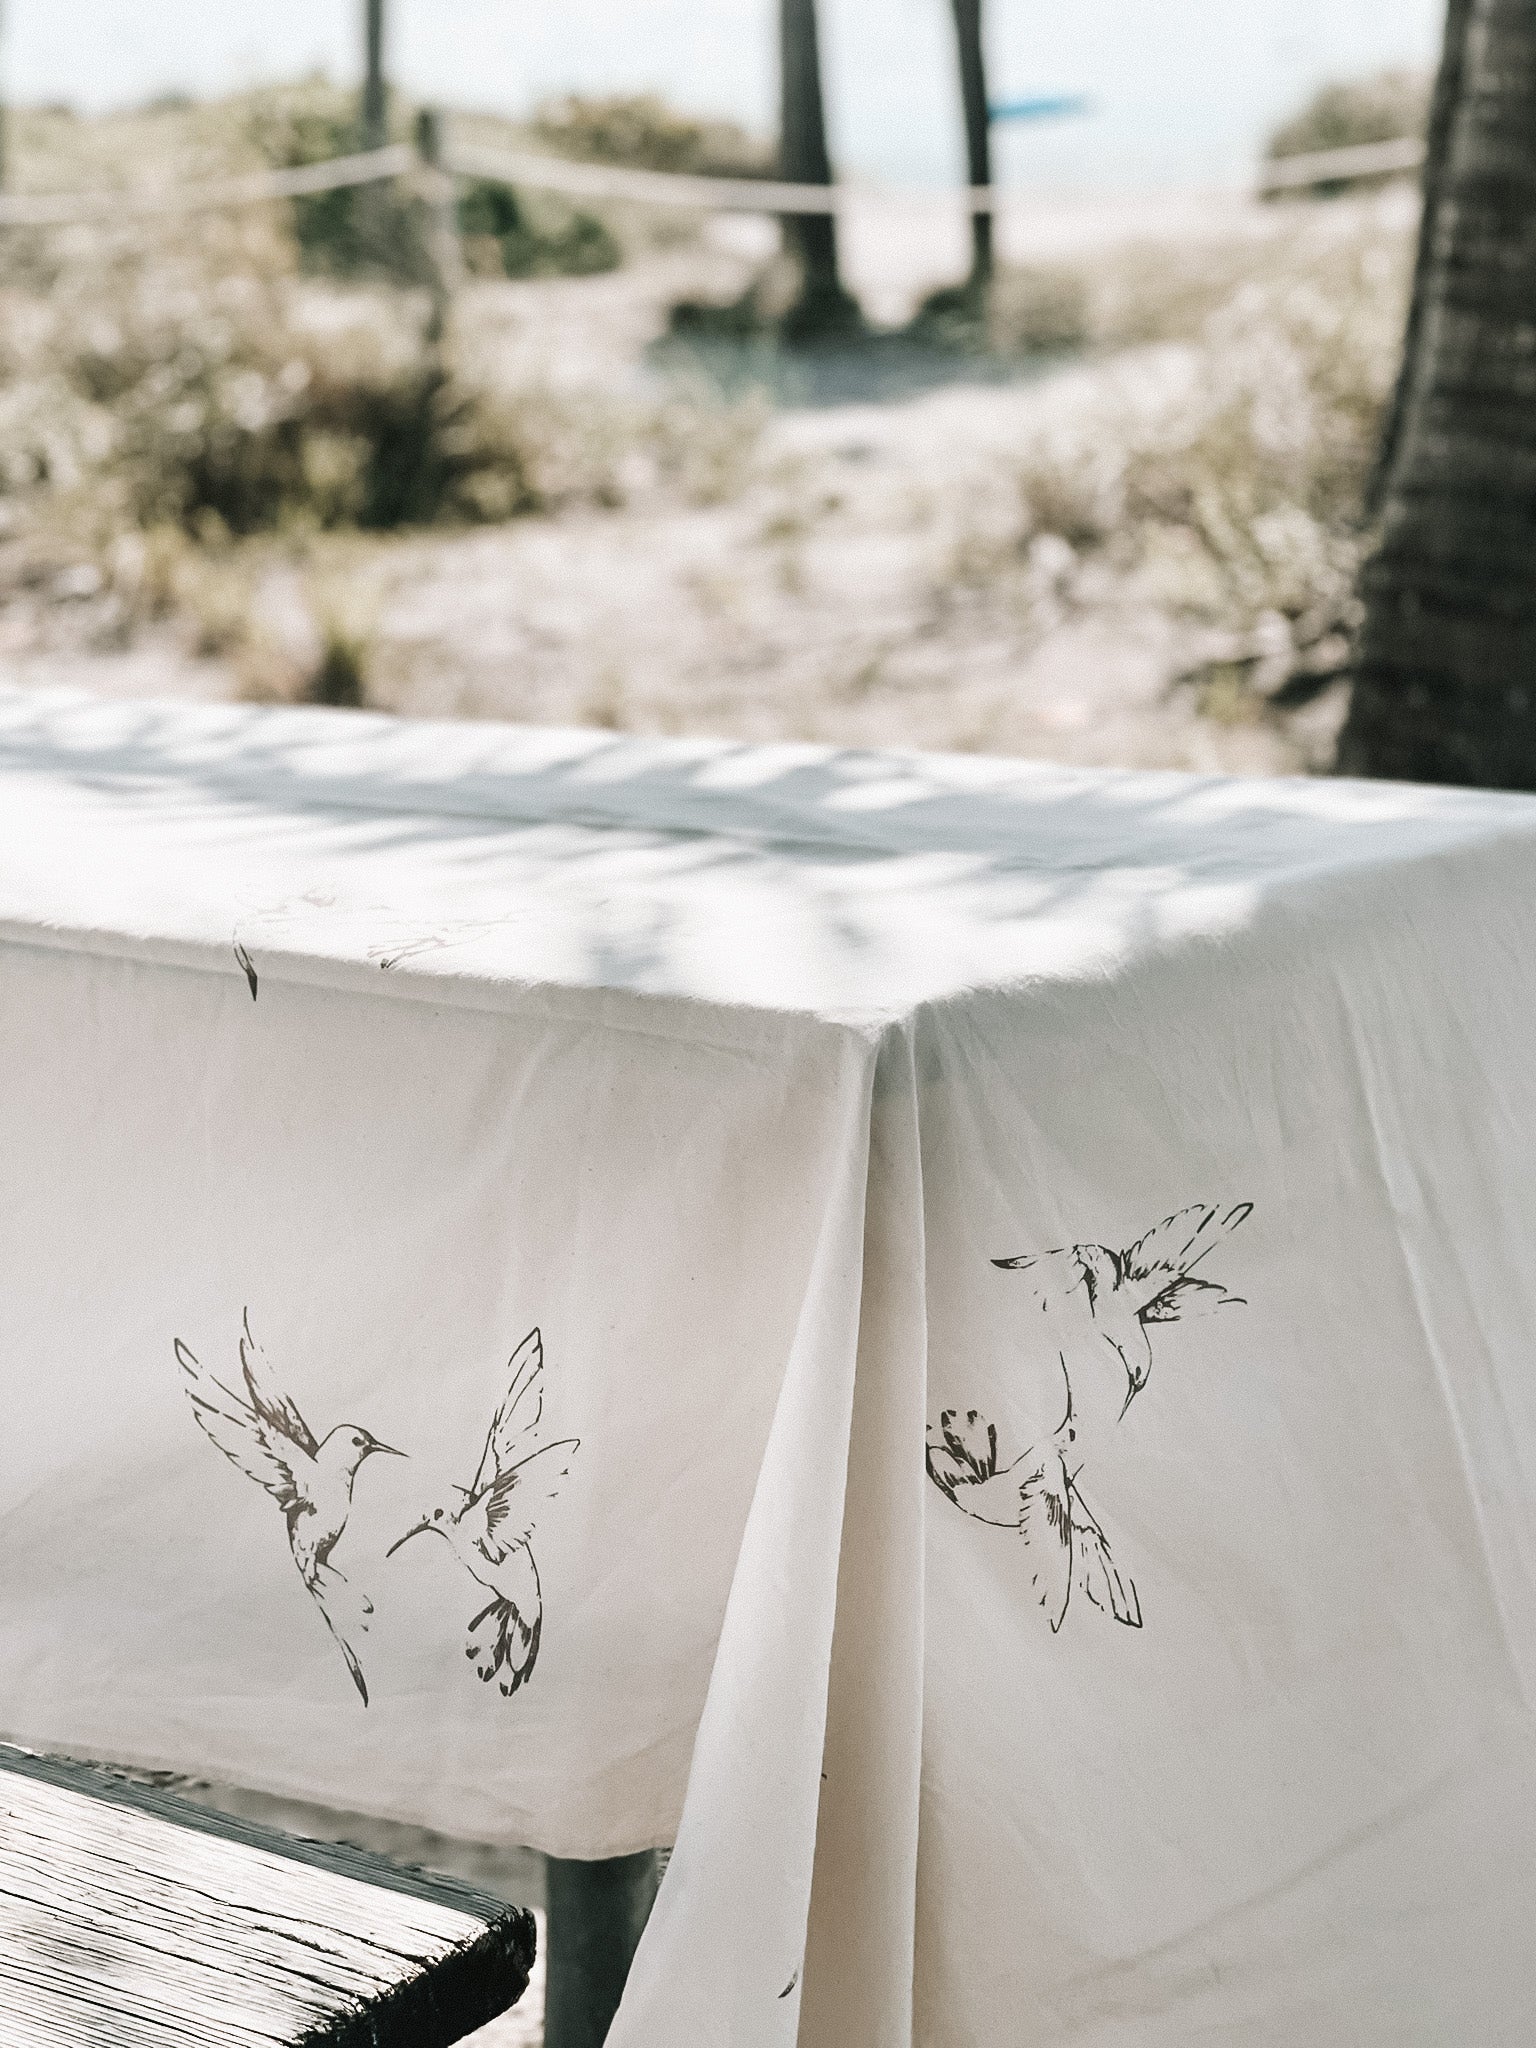 Hummingbirds Tablecloth